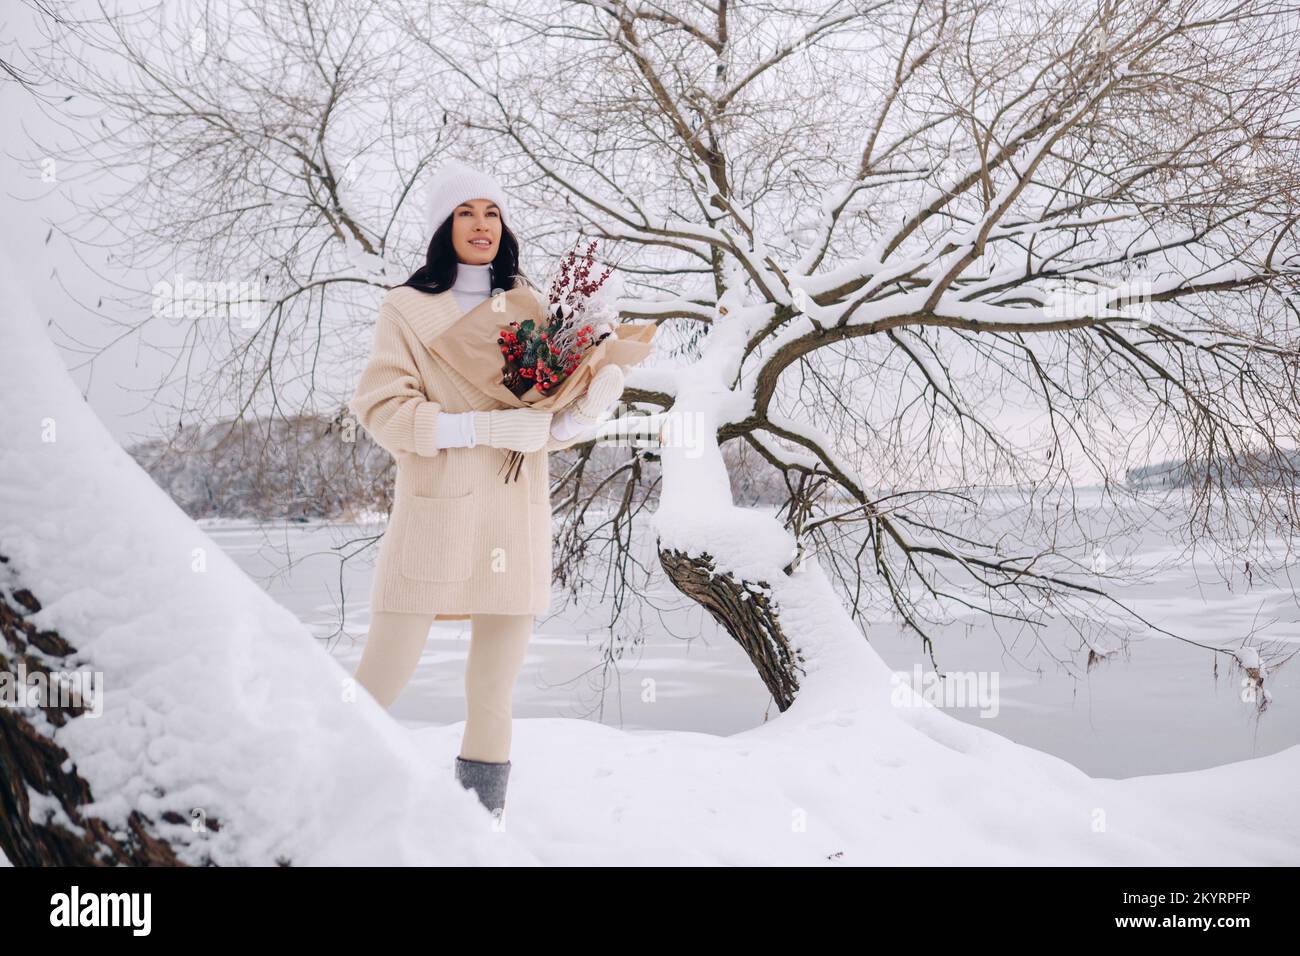 Ein Mädchen in einer beigen Strickjacke und Winterblumen geht in der Schneesaison in der Natur spazieren. Winterwetter Stockfoto